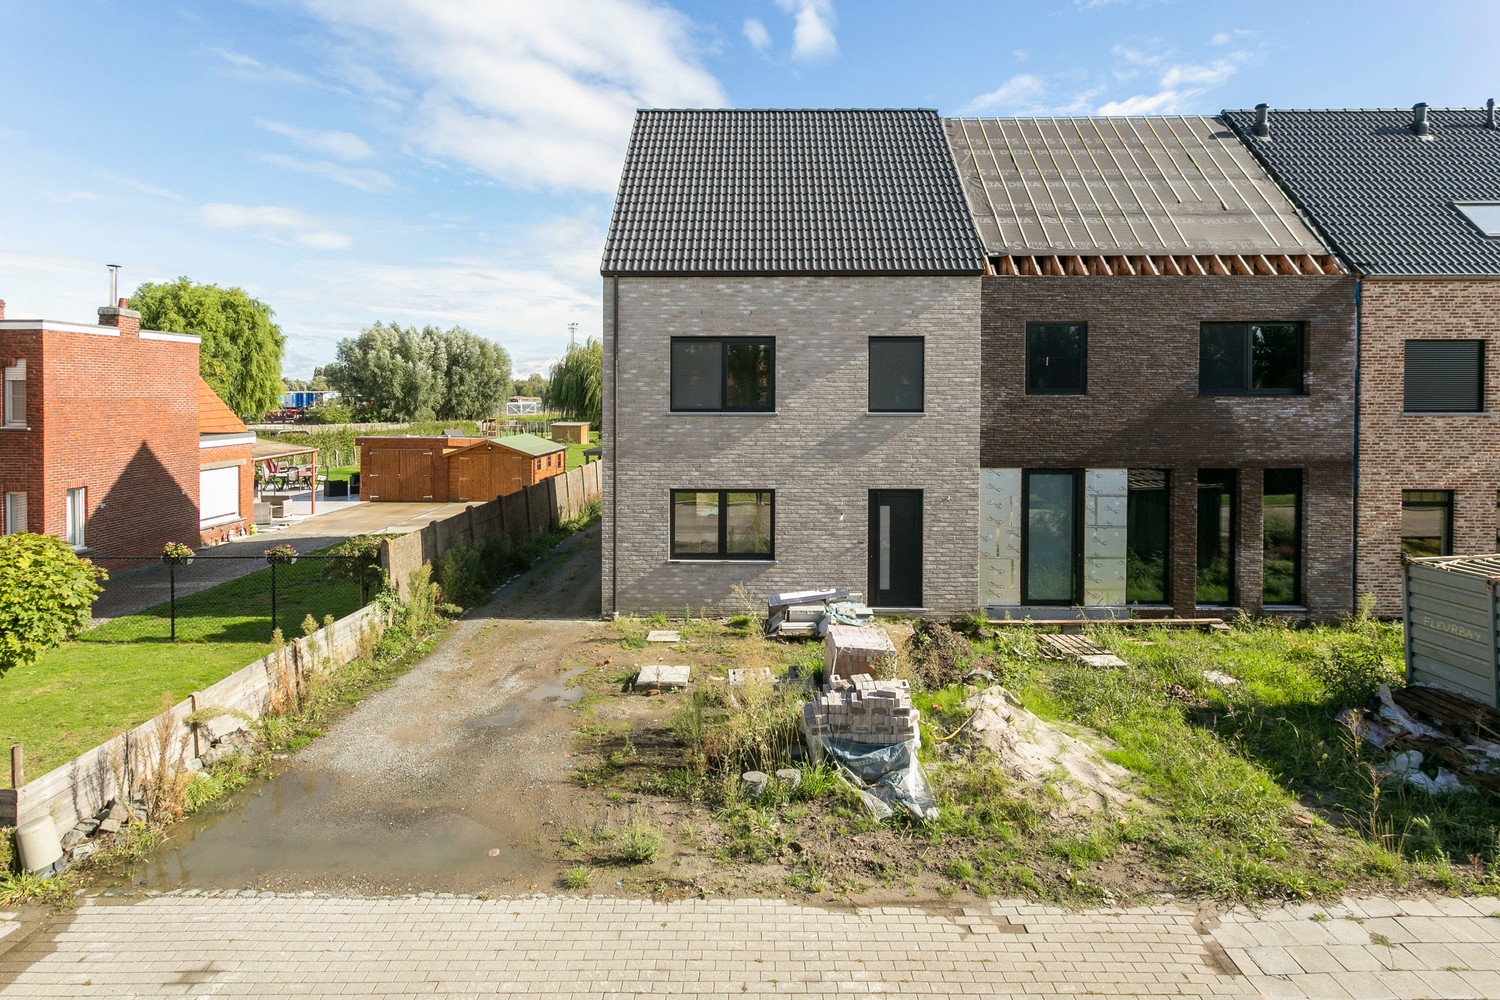 Gloednieuwe, energiezuinige woning met 3 slaapkamers & zonnige tuin in Koningshooikt! afbeelding 22